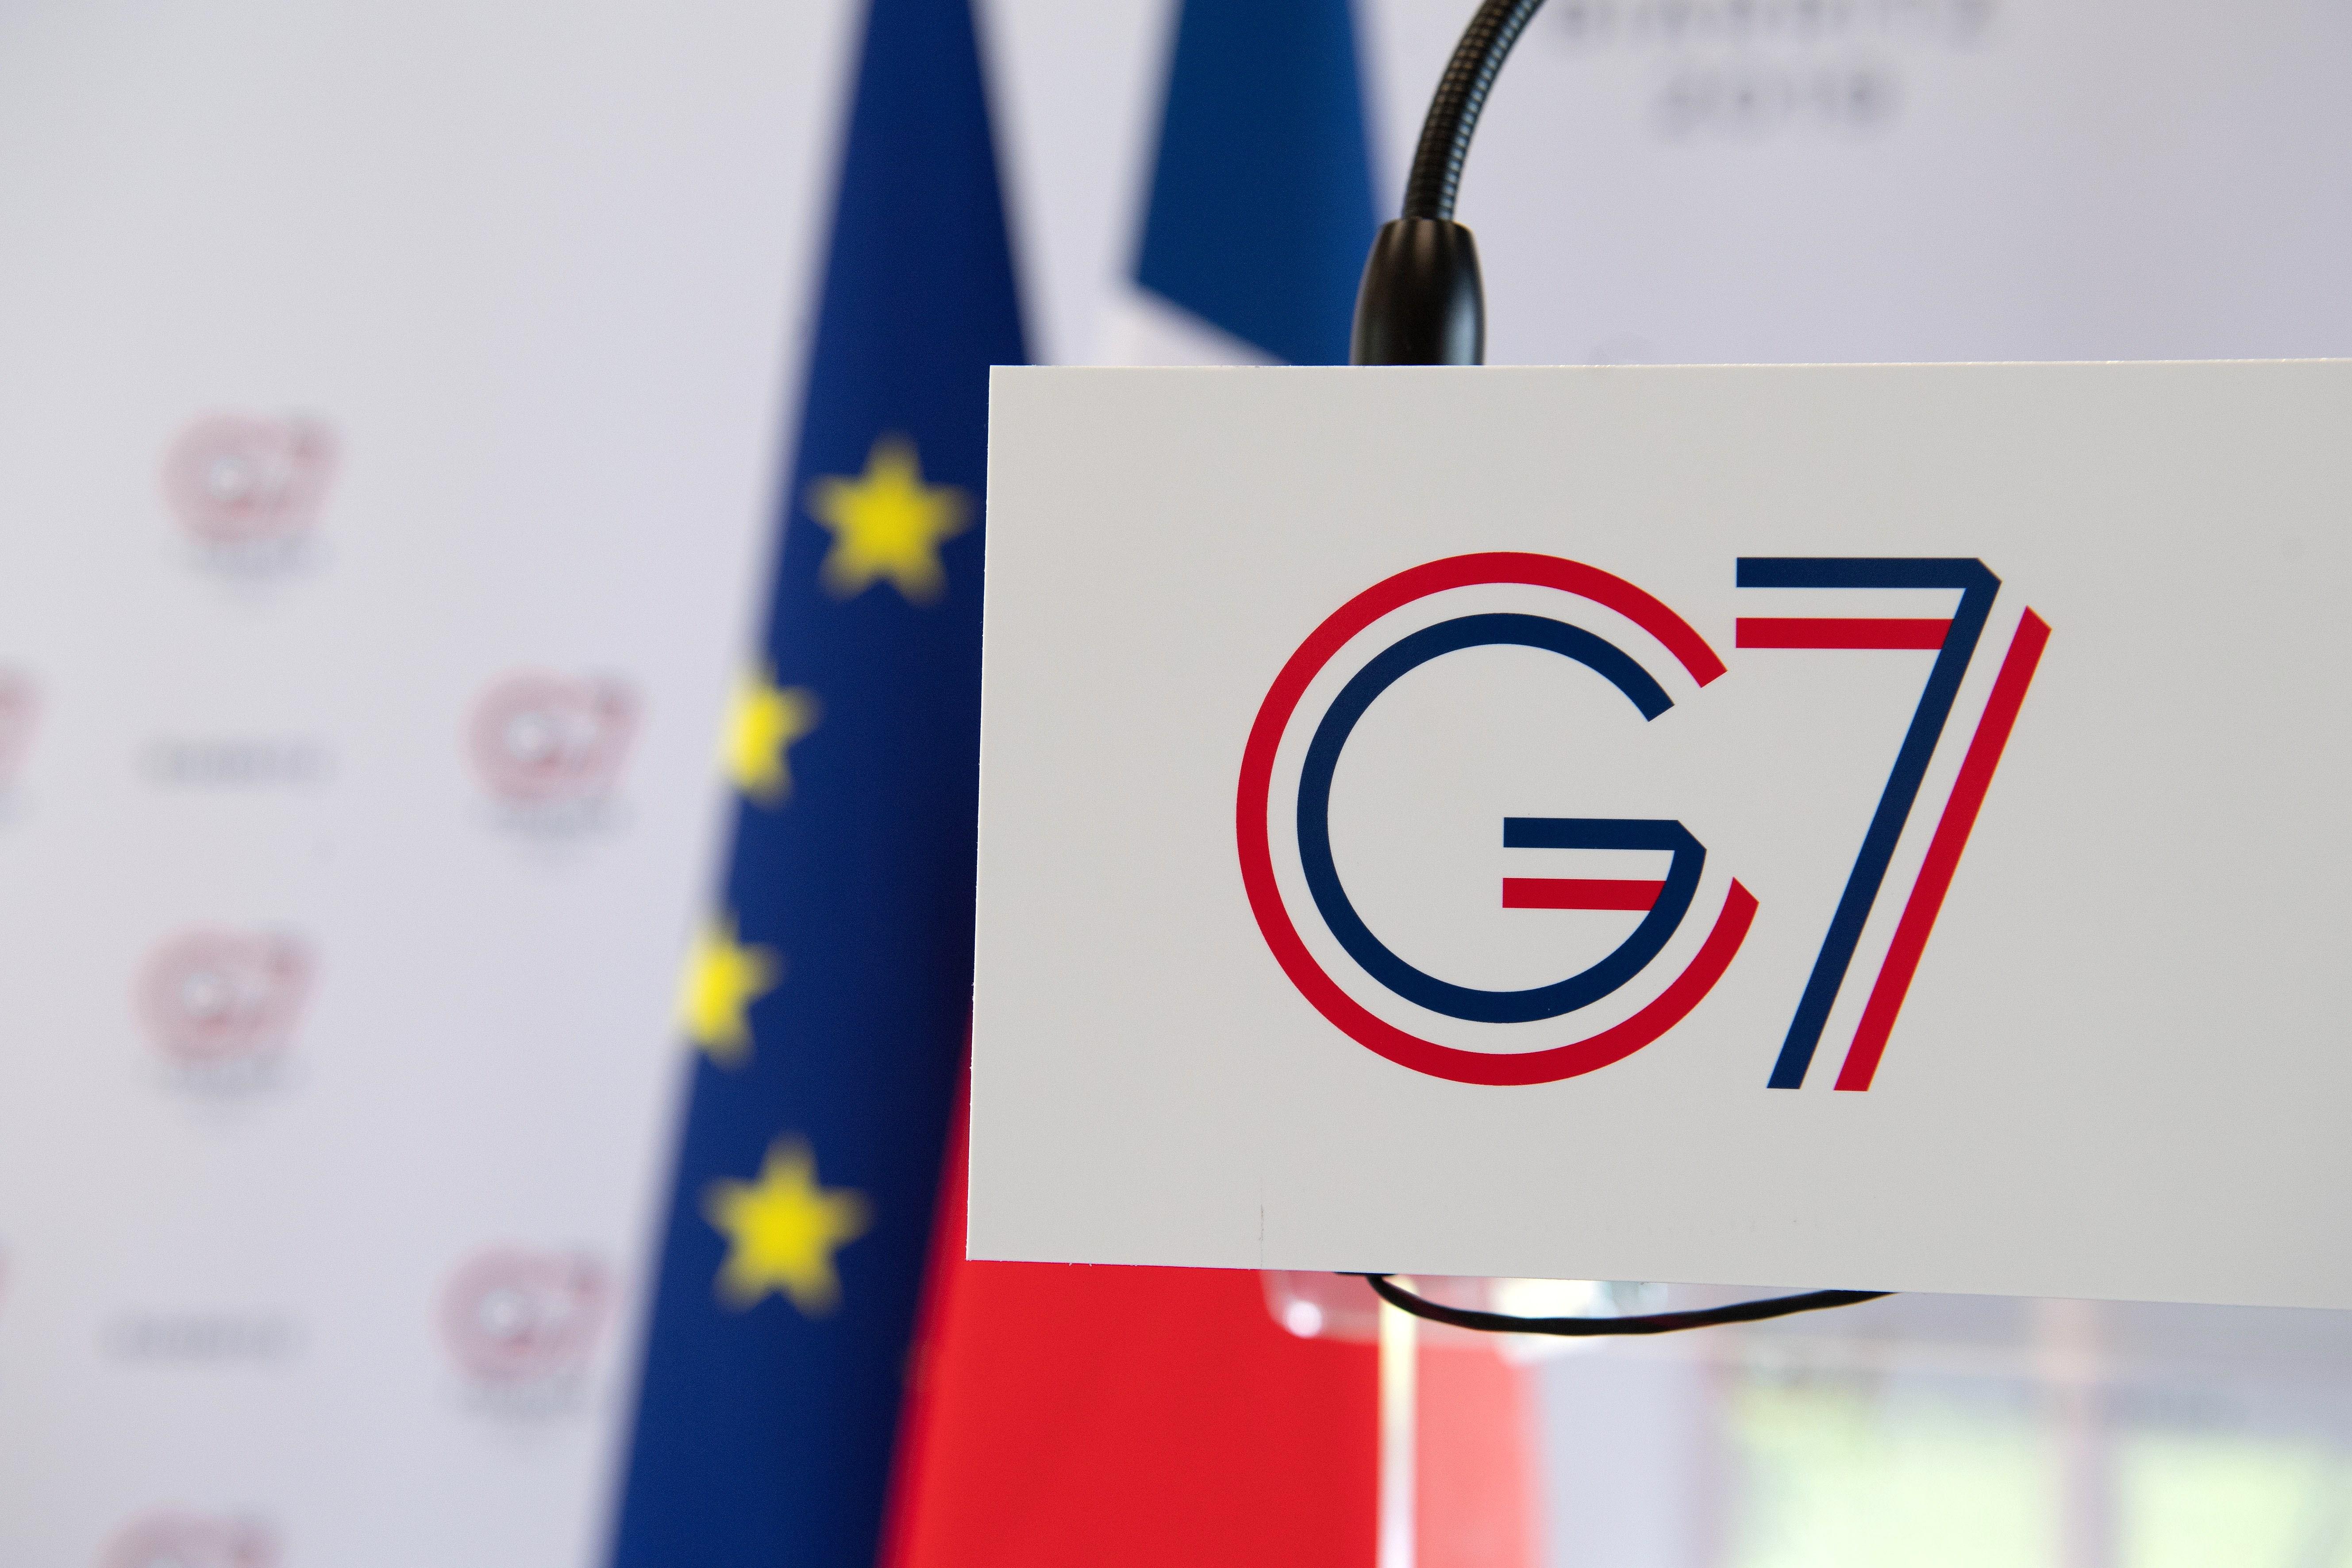 El inicio de la cumbre del G7 en Biarritz deja, de momento, a 17 detenidos y 4 policías heridos